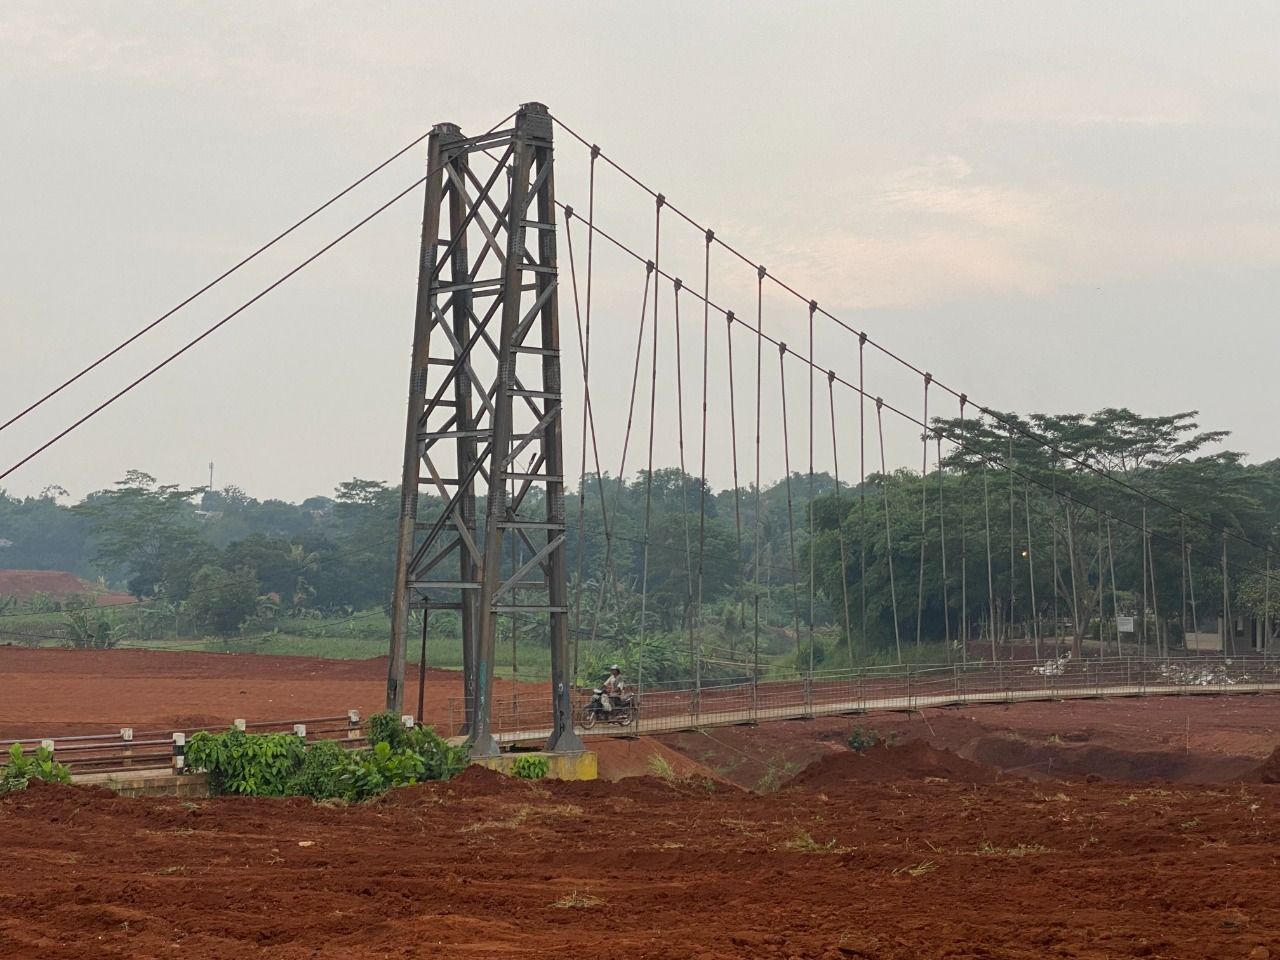 Jembatan di atas sungai yang viral hendak digusur. Lokasi di Bojongsari, Kota Depok, Jawa Barat, 30 Januari 2023.